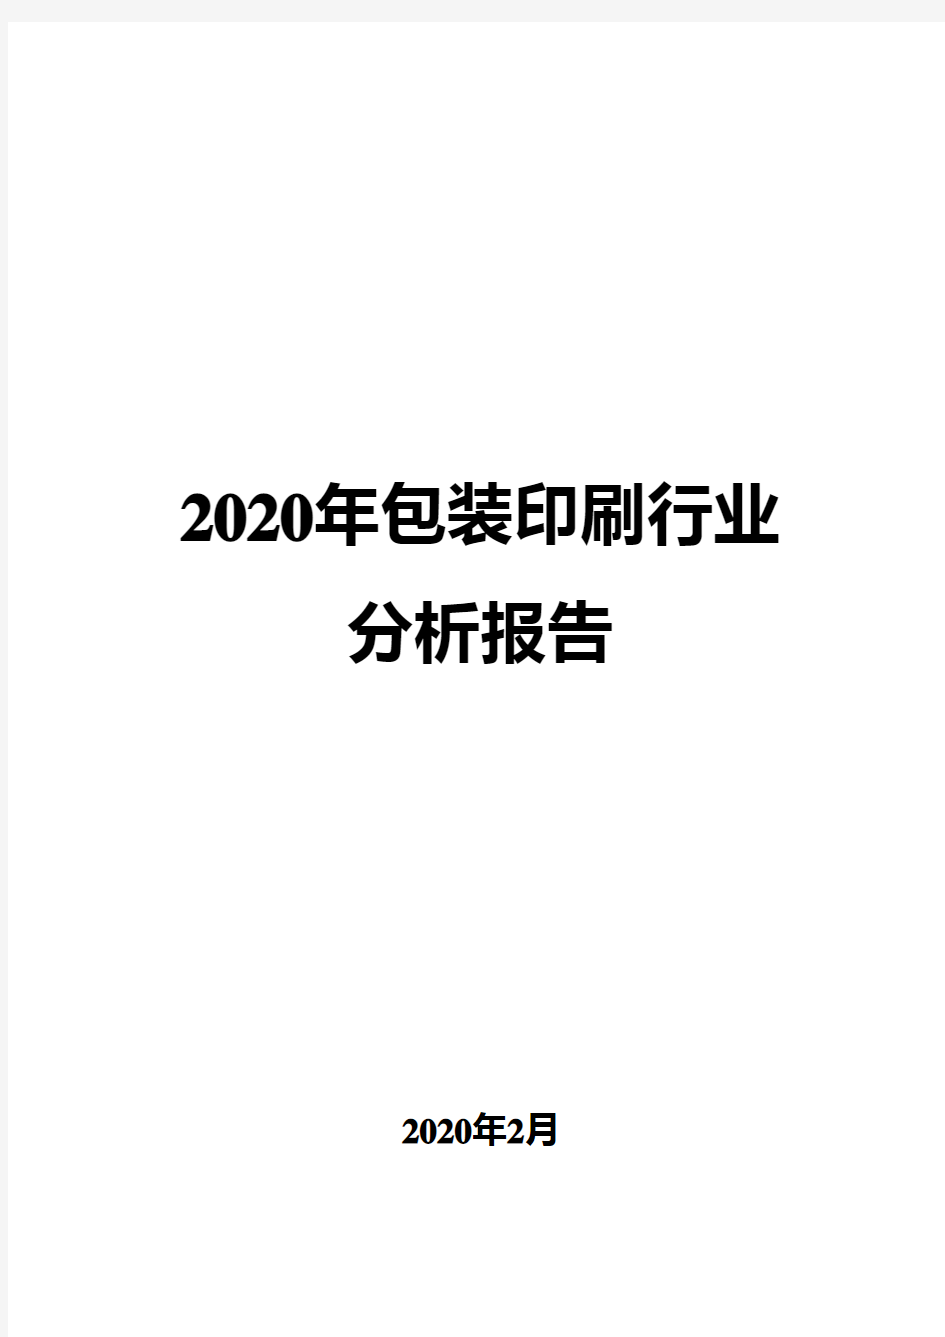 2020年包装印刷行业分析报告